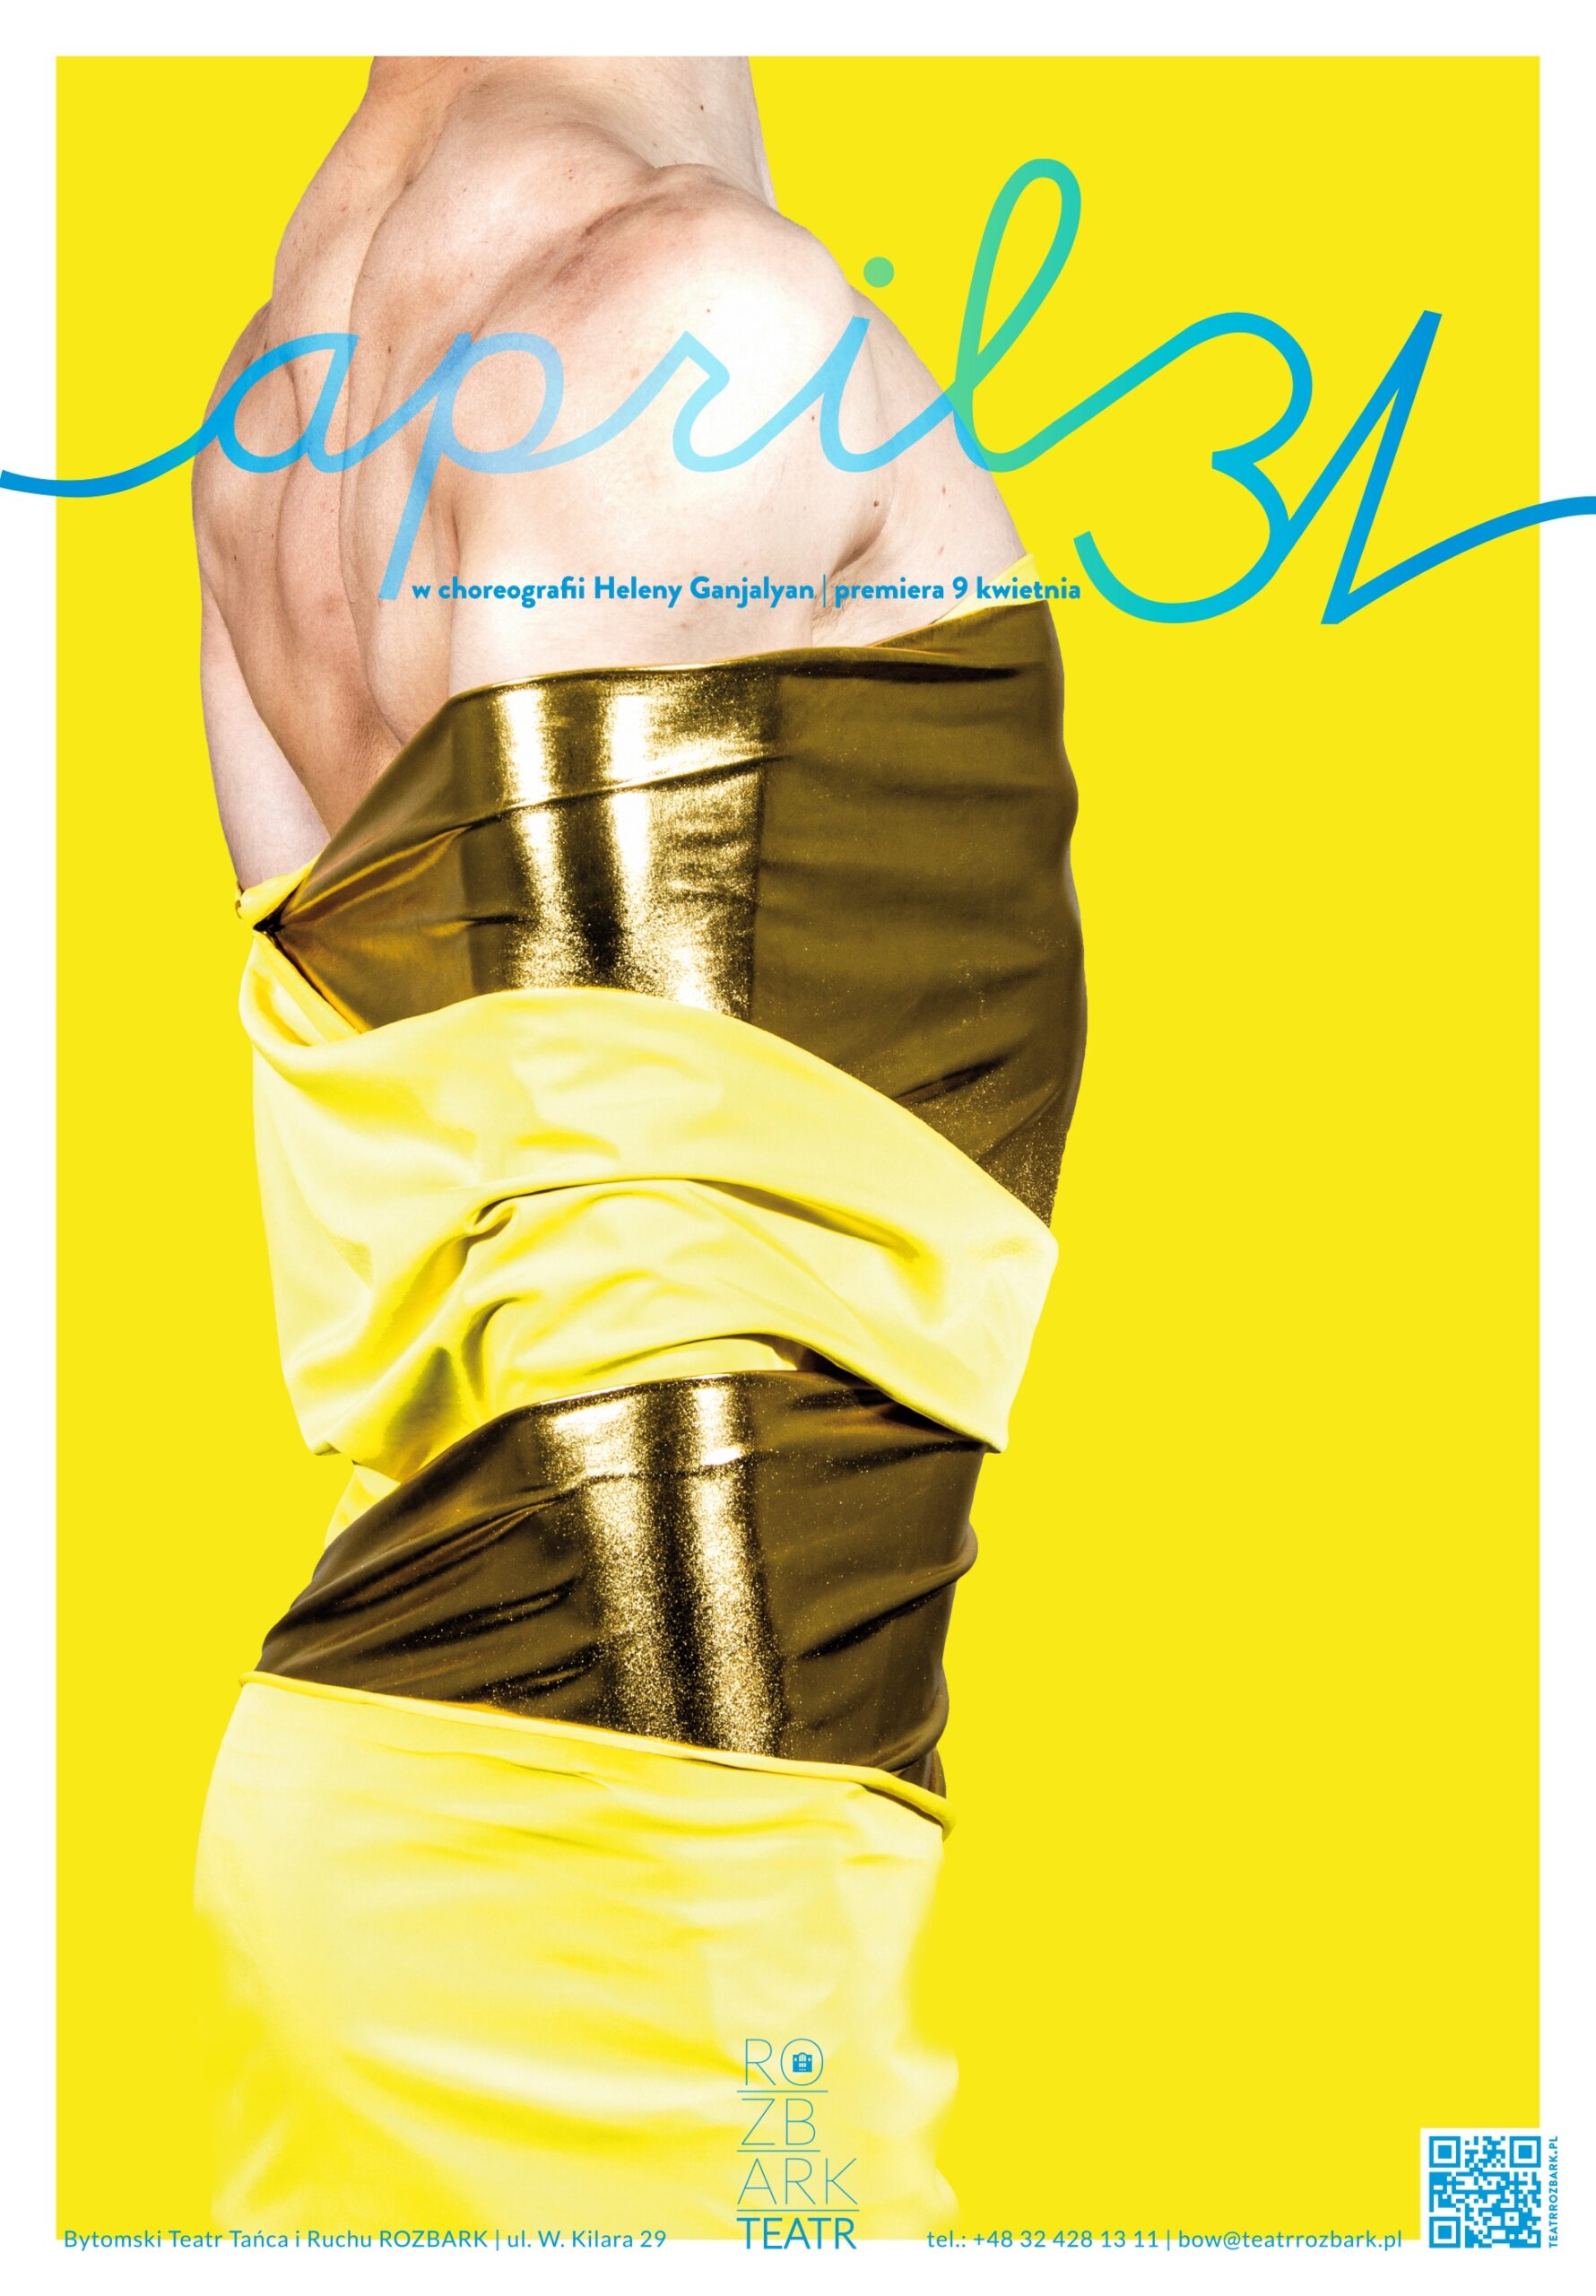 Plakat ze spektaklu April 31. Na żółtym tle znajduje się sylwetka mężczyzny bez głowy owinięta w złoty materiał. Na jego ramionach umieszczono niebieski napis april31 w choreografii Heleny Ganjalyan Ipremiera 9 kwietnia.